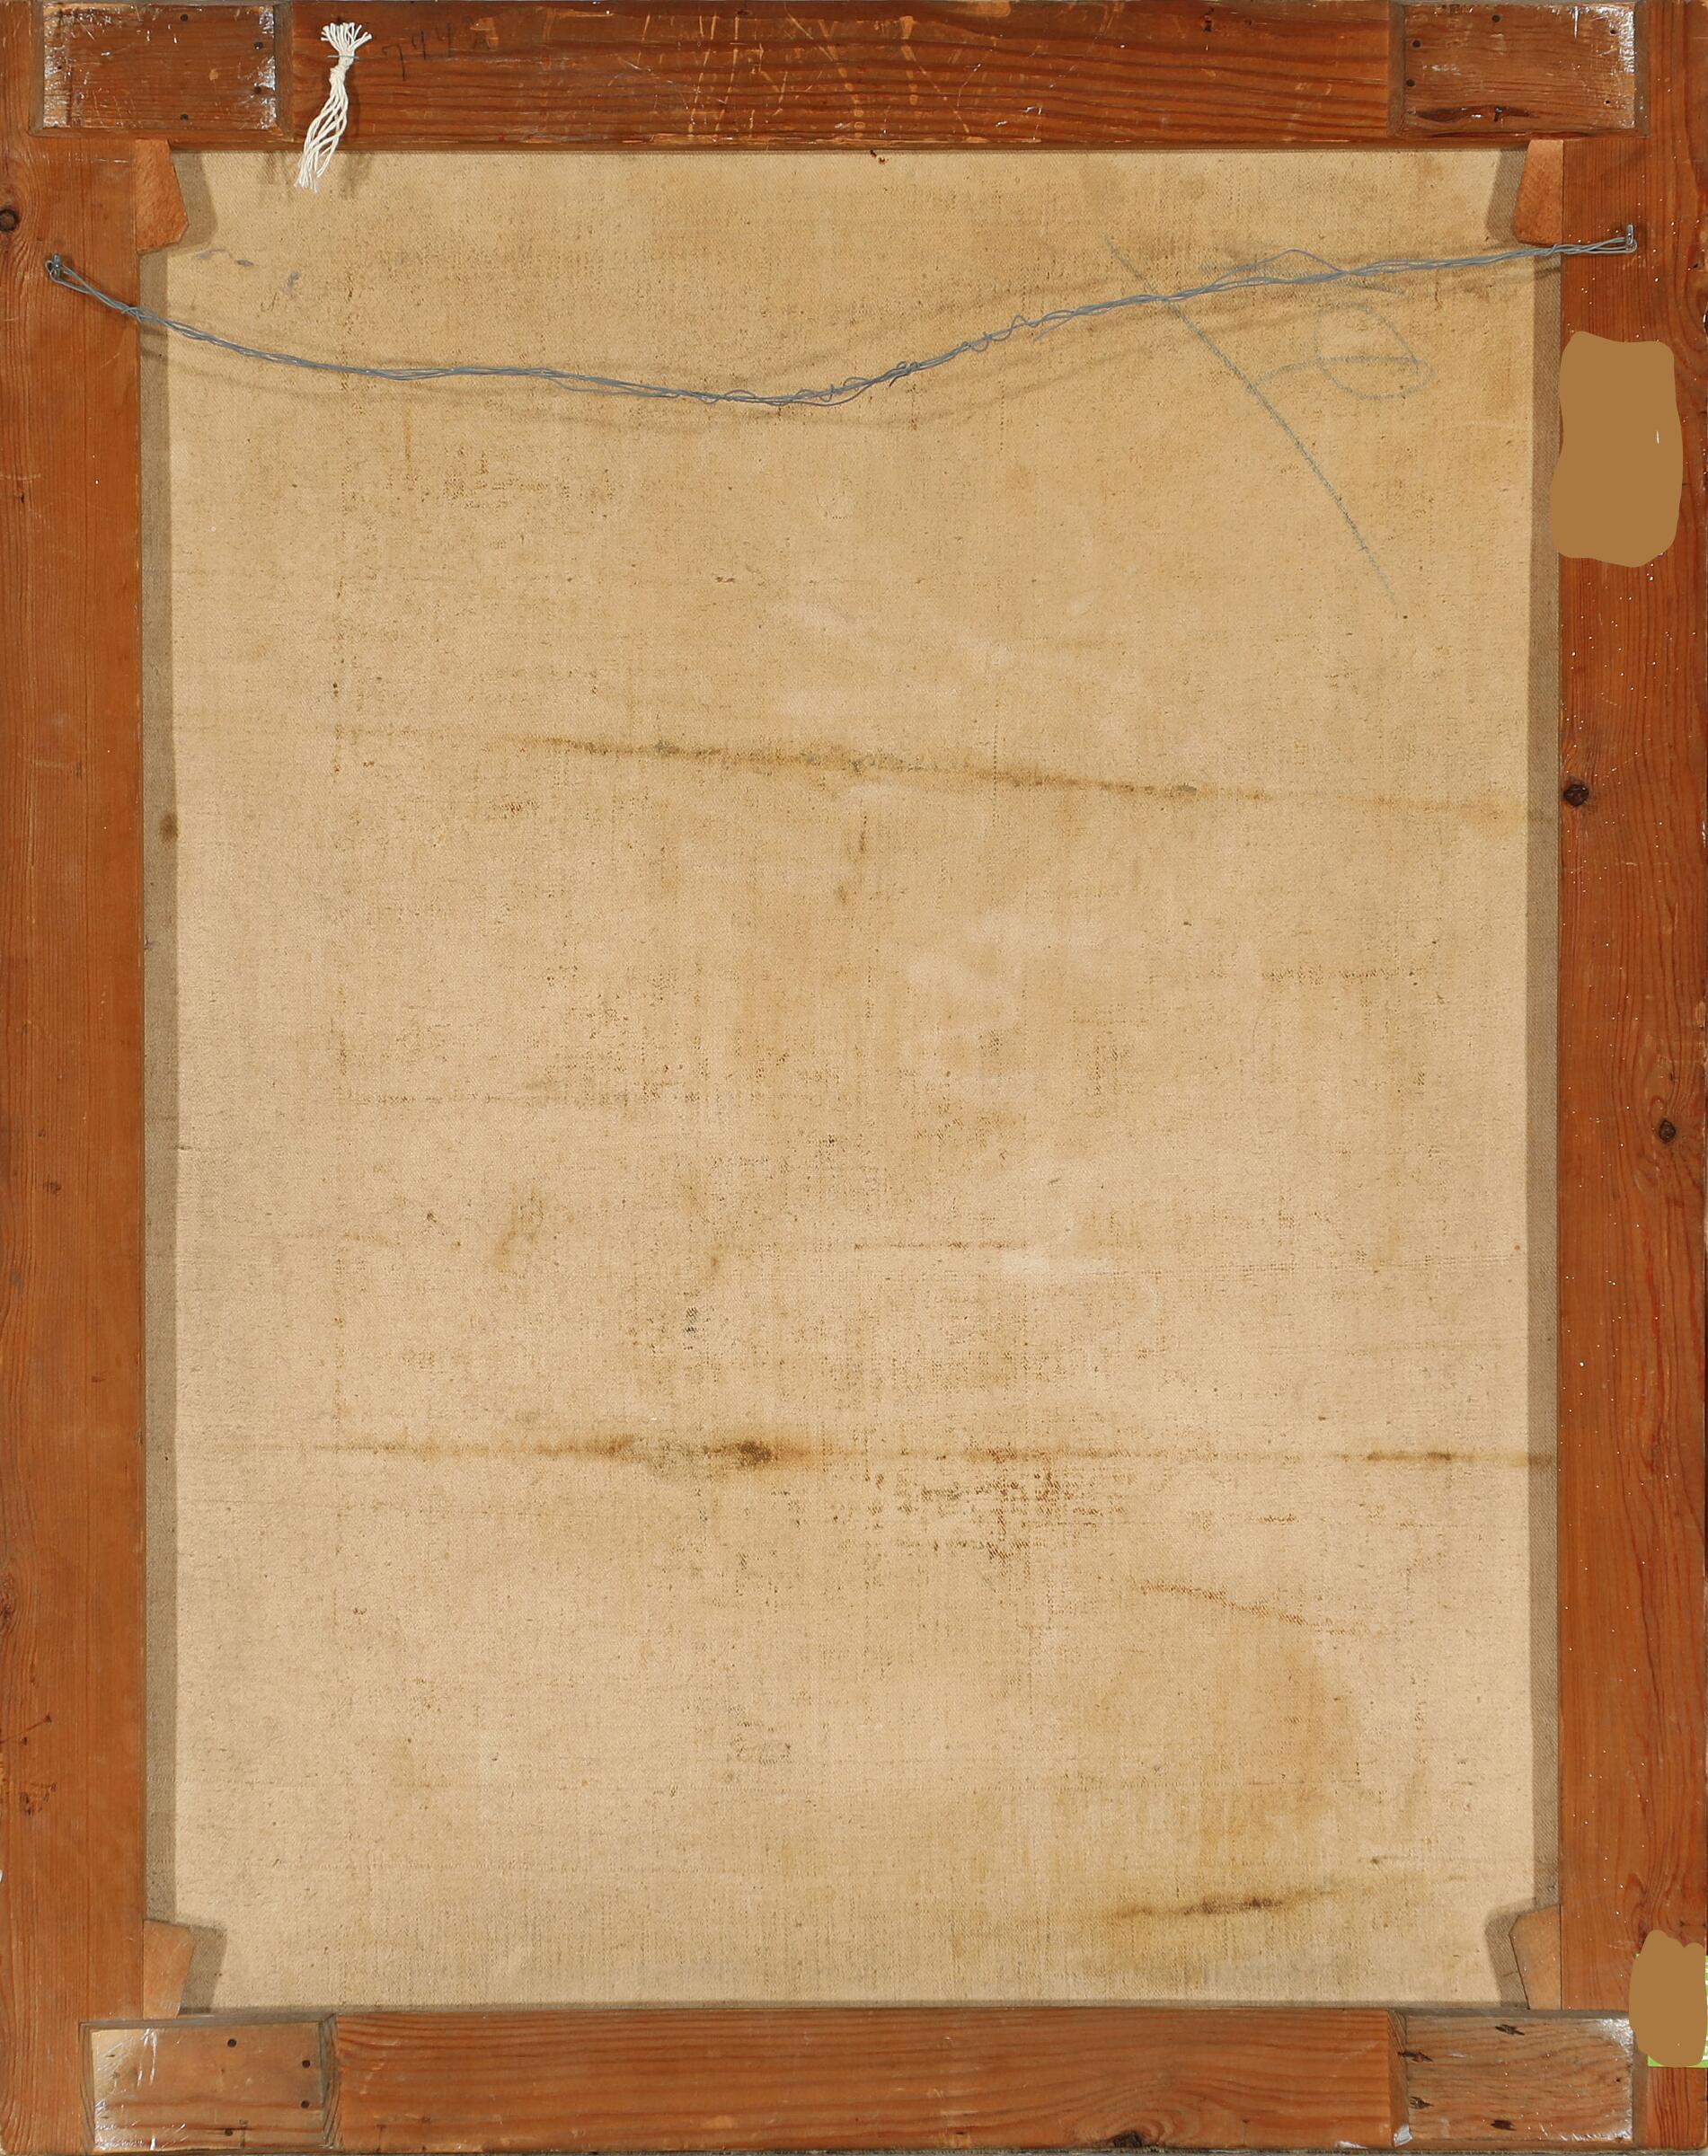 Maler unbekannt, 18. Jahrhundert: Die unbefleckte Empfängnis. Nicht signiert. Öl auf Leinwand auf Leinwand aufgezogen. Ca. 67 × 52 cm. Ungerahmt.